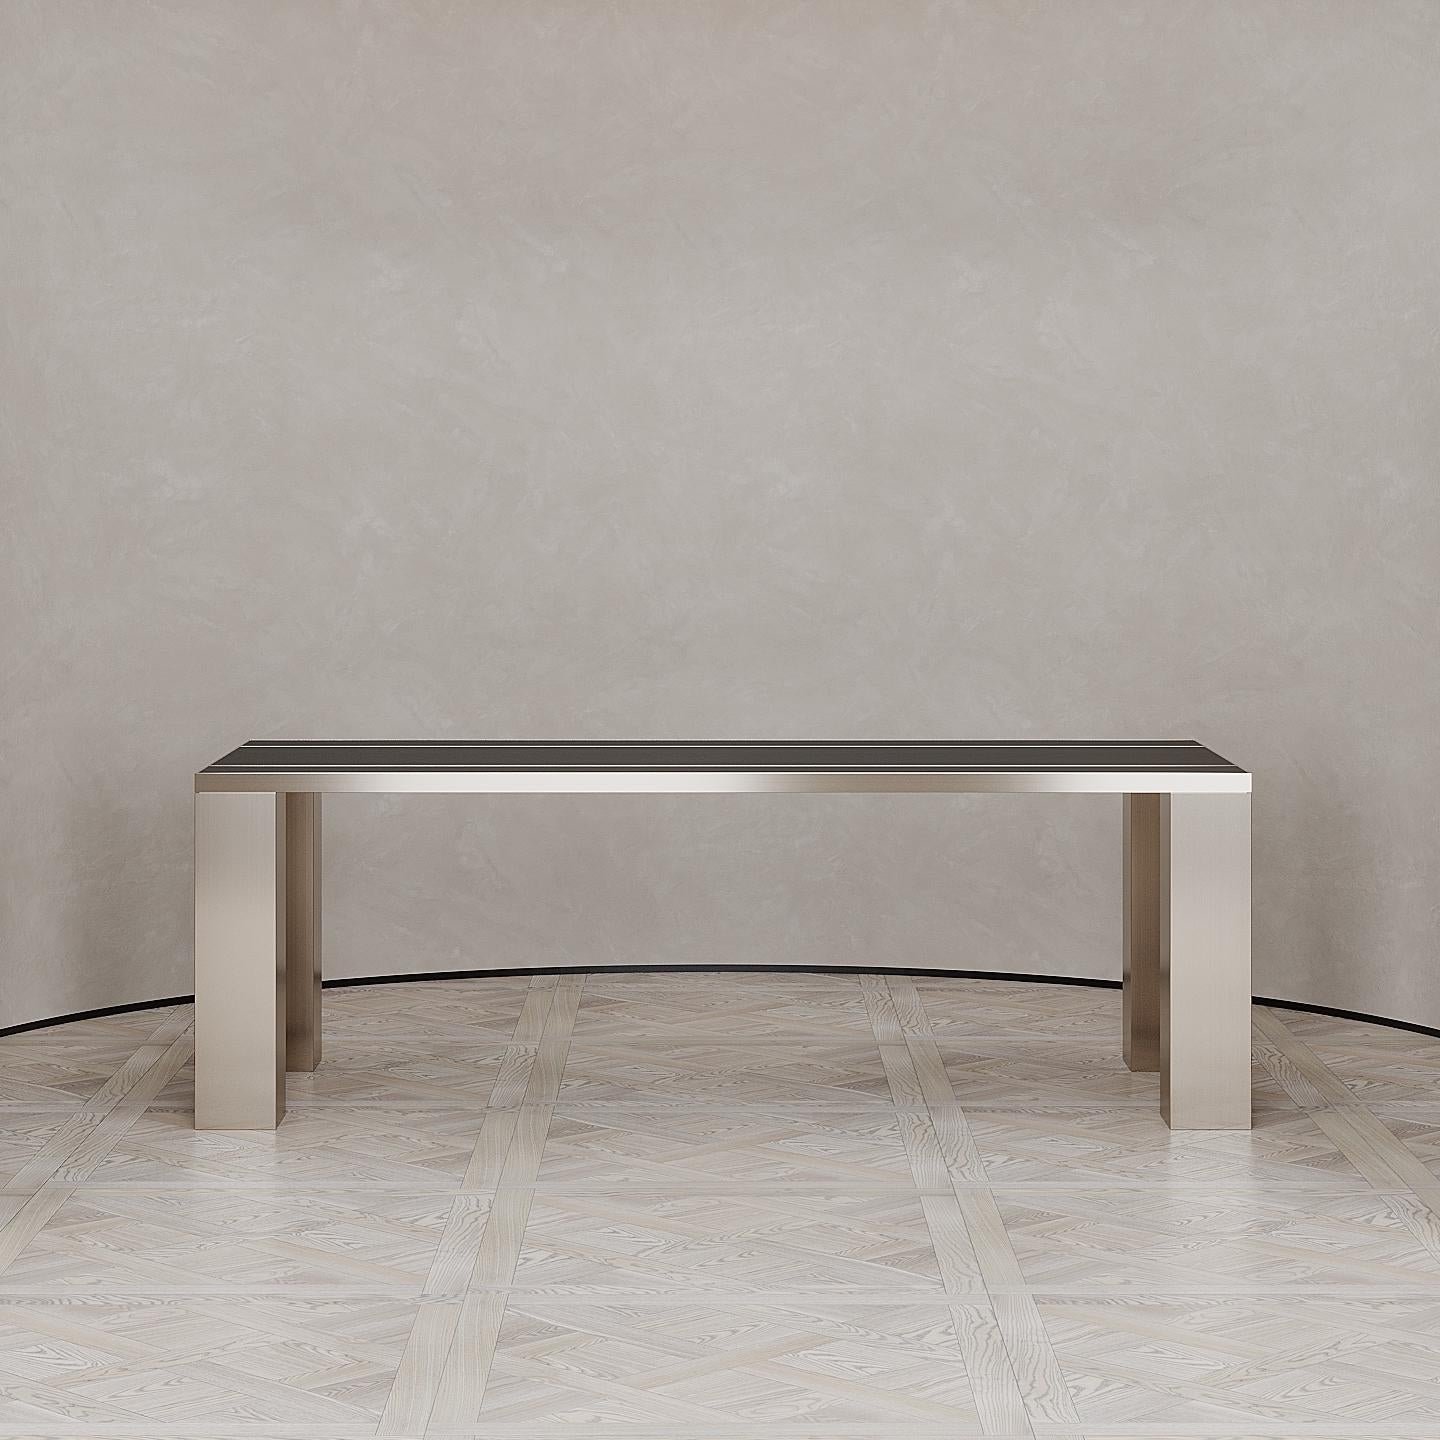 La table à manger Penumbra est conçue par Emél & Browne dans le style minimaliste et contemporain et fabriquée sur mesure en Italie par des artisans qualifiés. Les pieds en cuivre rayonnant de la table à manger Penumbra émettent une énergie de